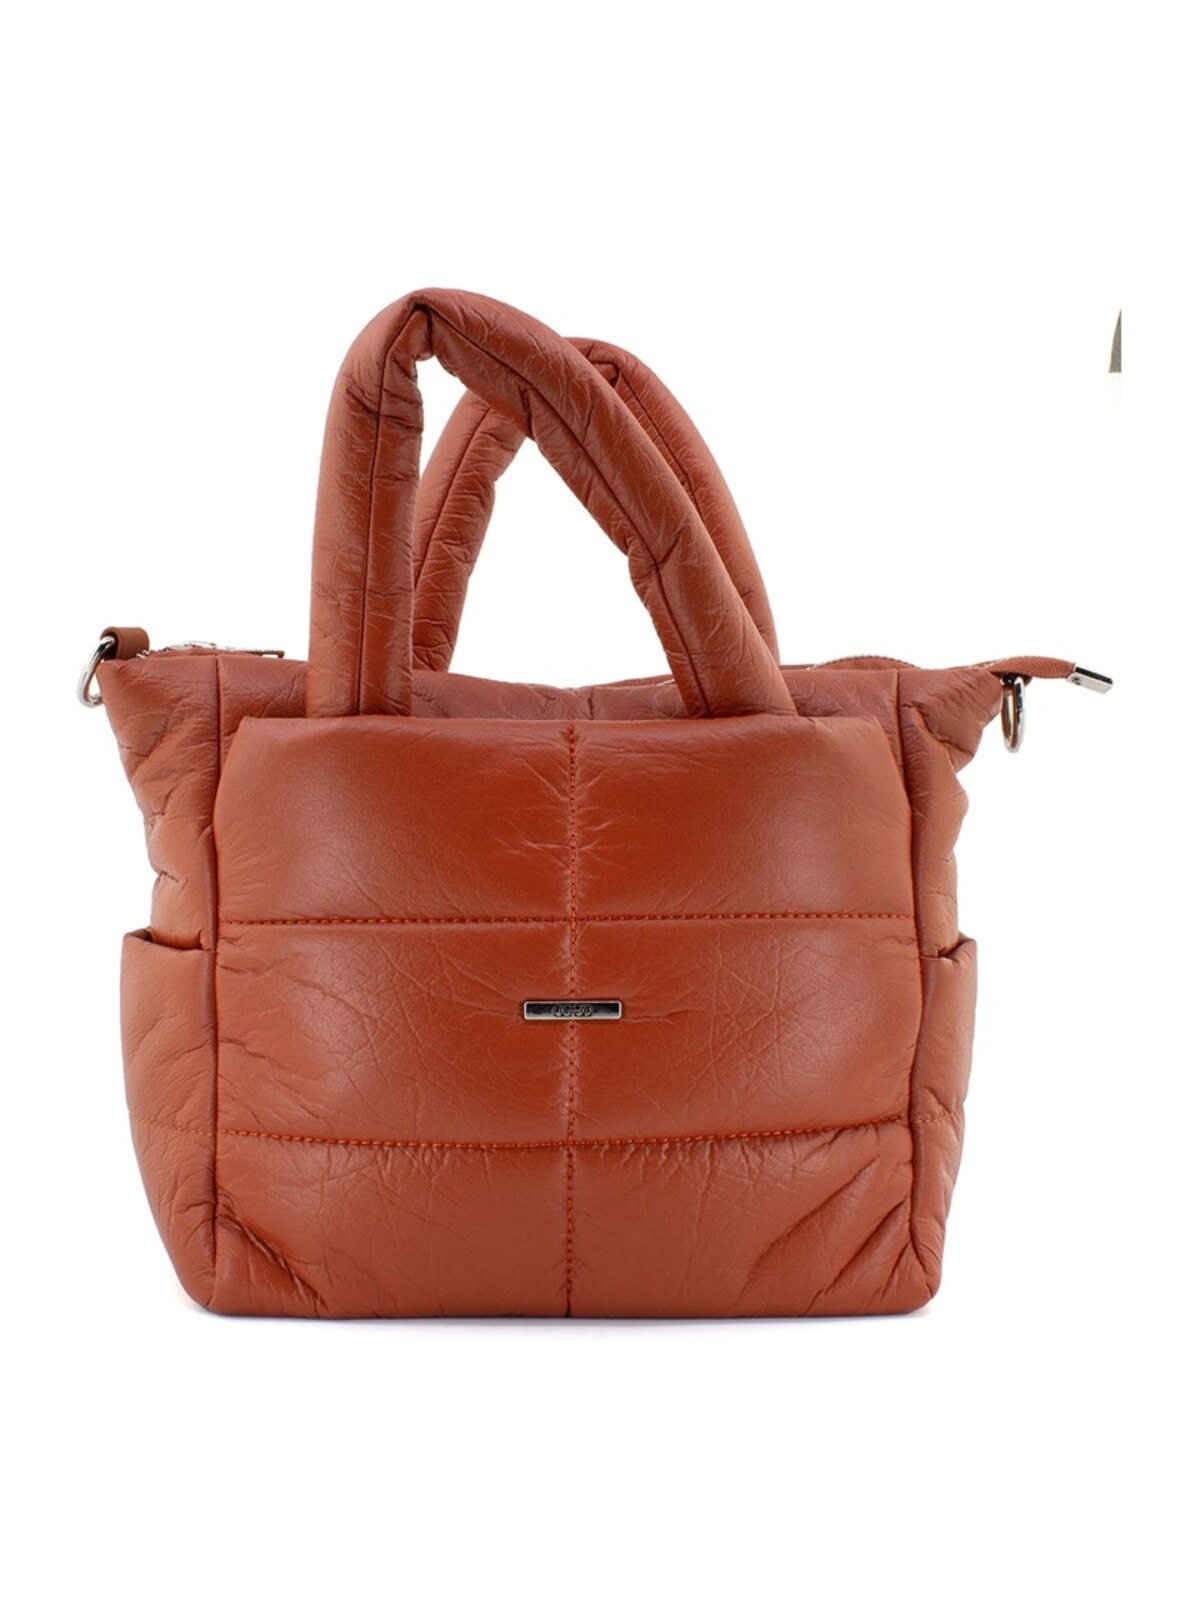 Terra Cotta - Shoulder Bags